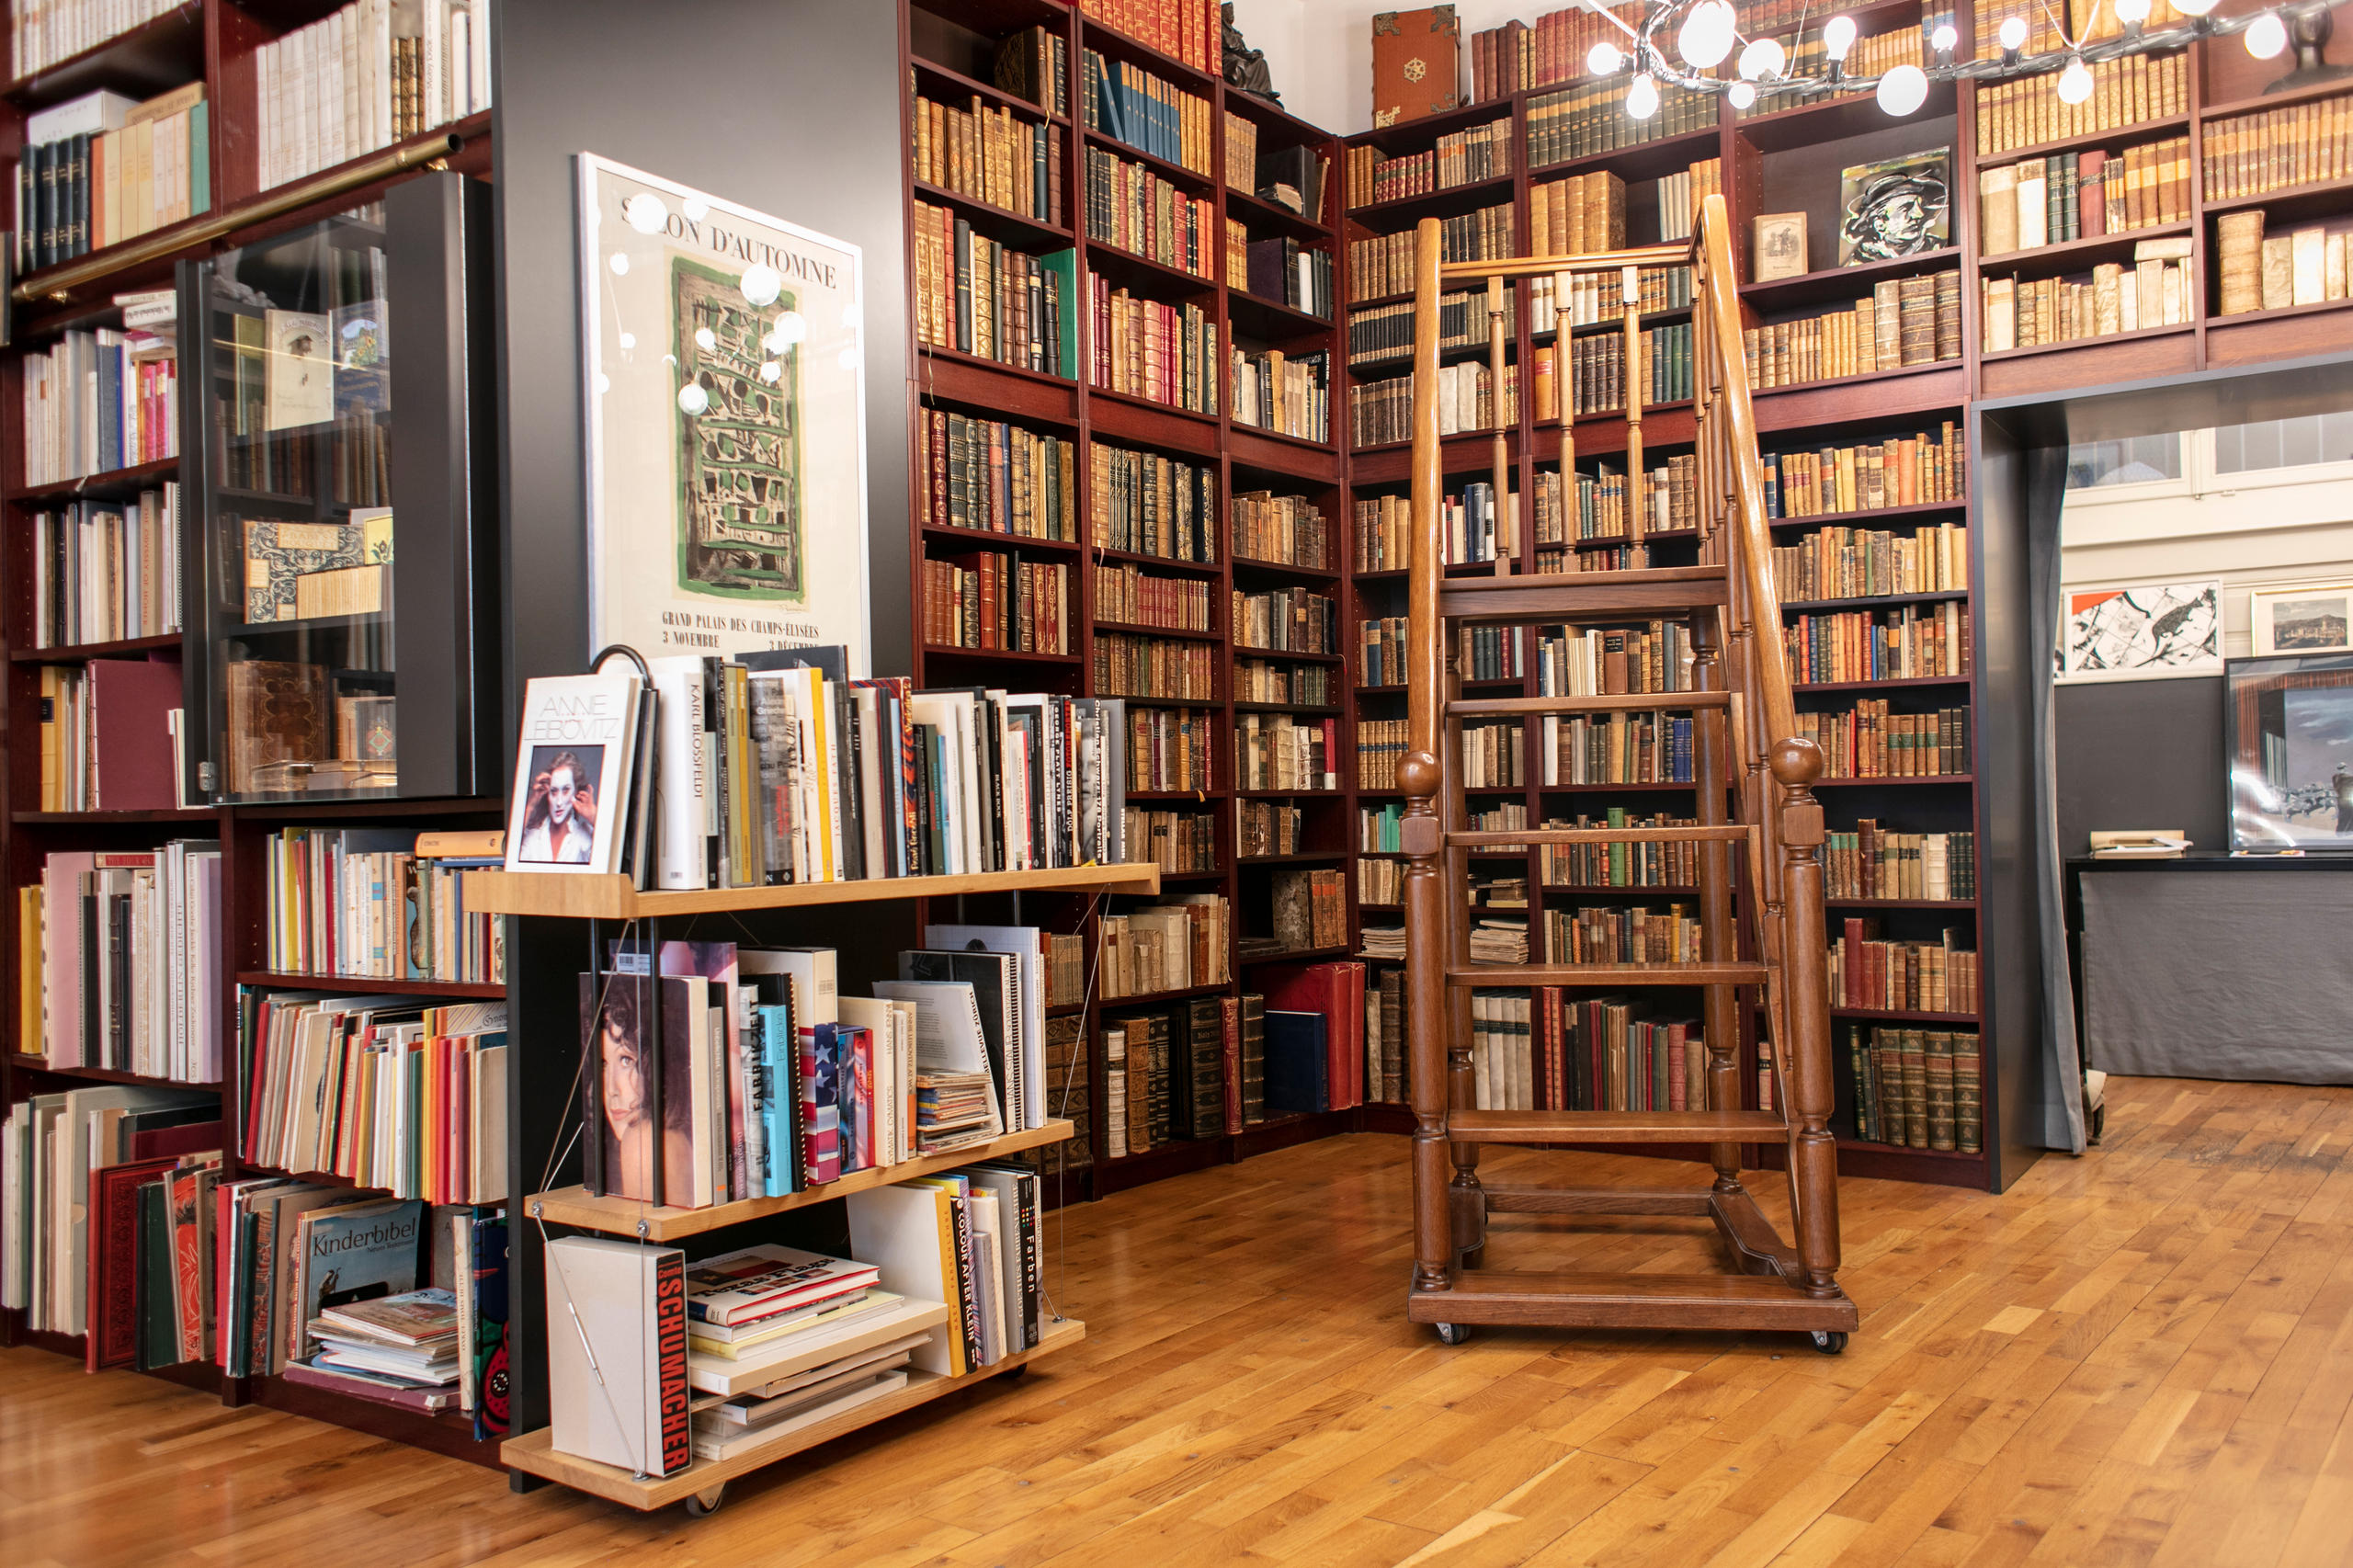 古書籍商のビヒセル氏は、2003年秋に最初の店を開いた。15～21世紀の書籍の買い取りと販売を行う